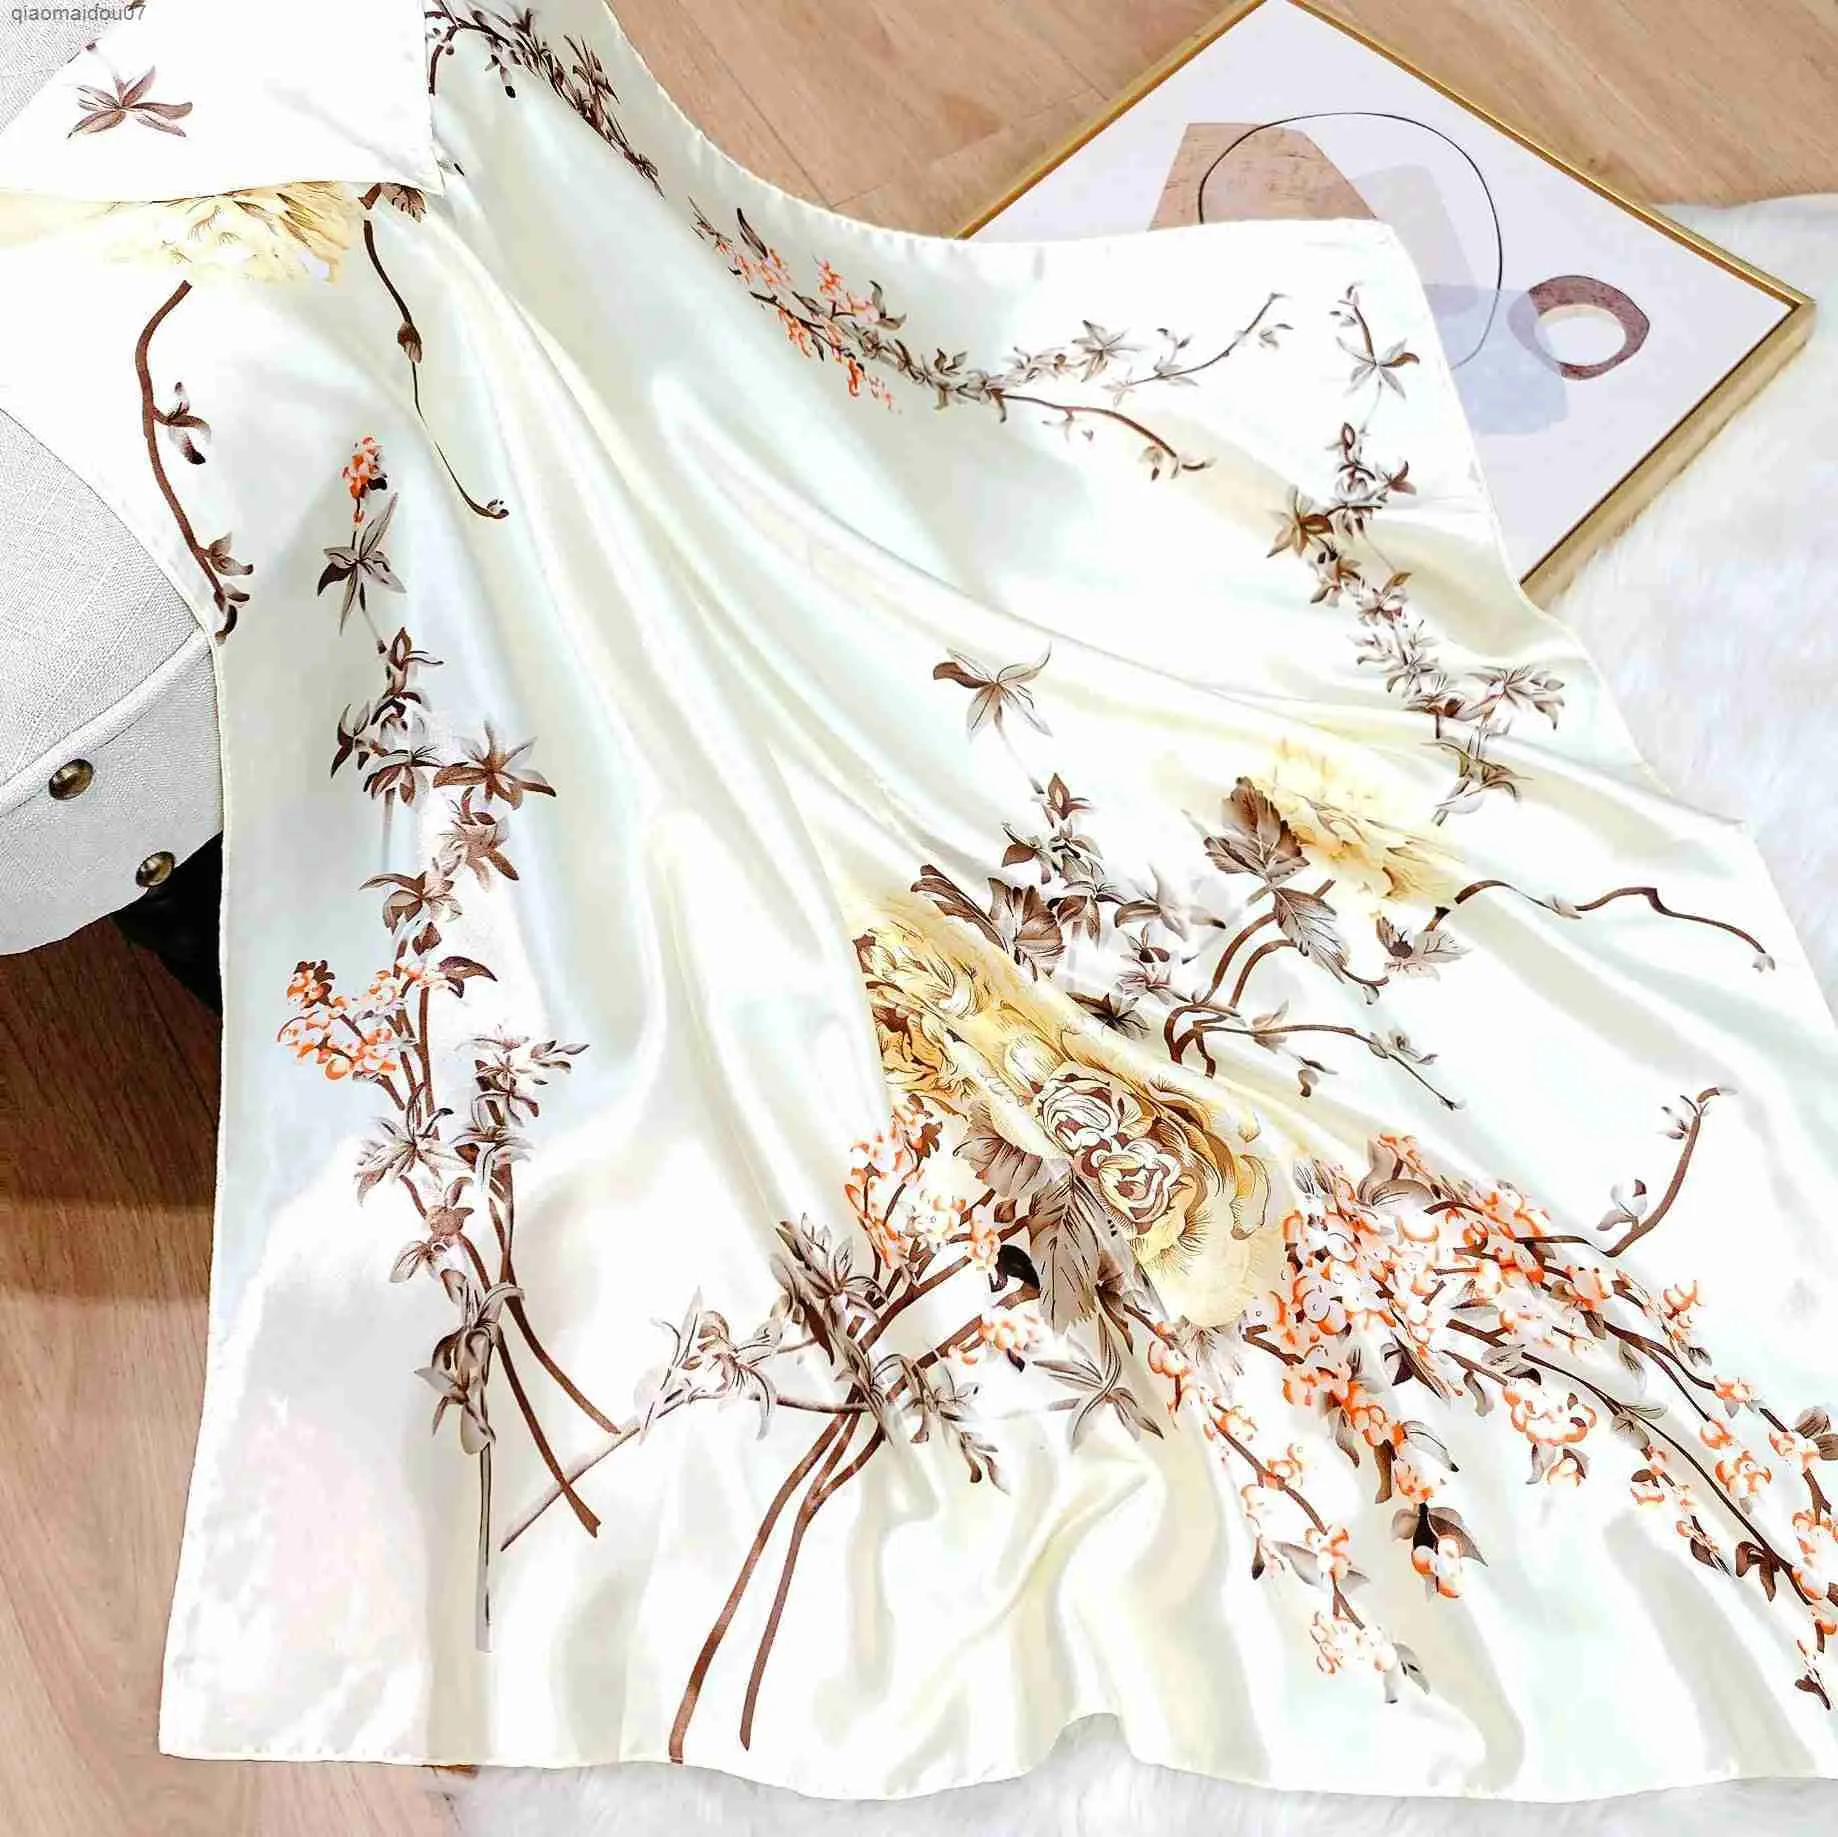 Châles rétro carrée florale femme écharpe châle de châle de châle femme imprimé biadcarf headscarfl2404